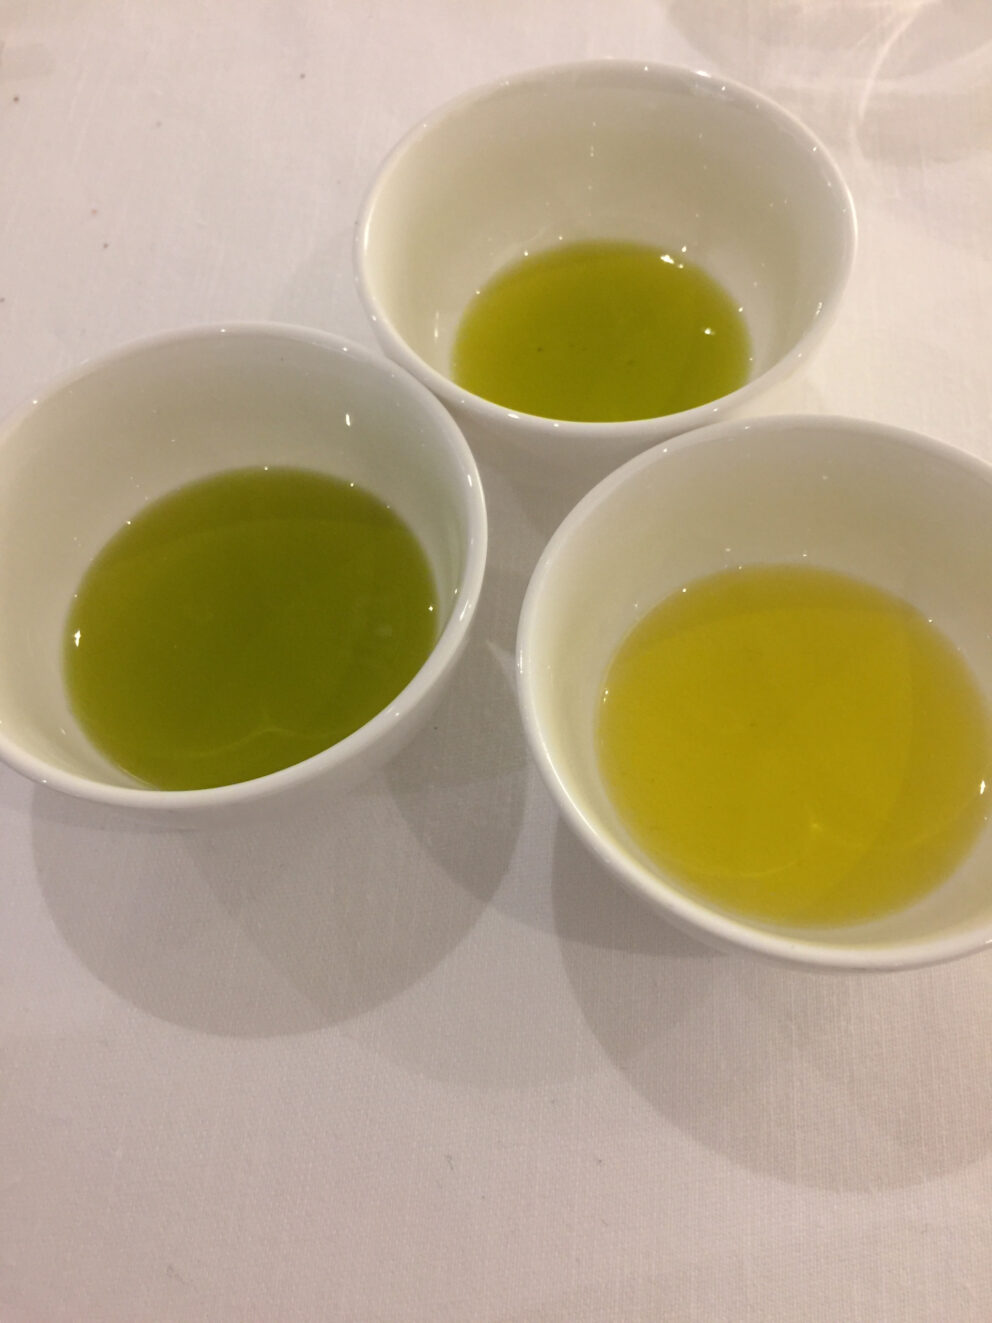 Introdotta in Spagna la nuova norma di qualità per gli oli da olive